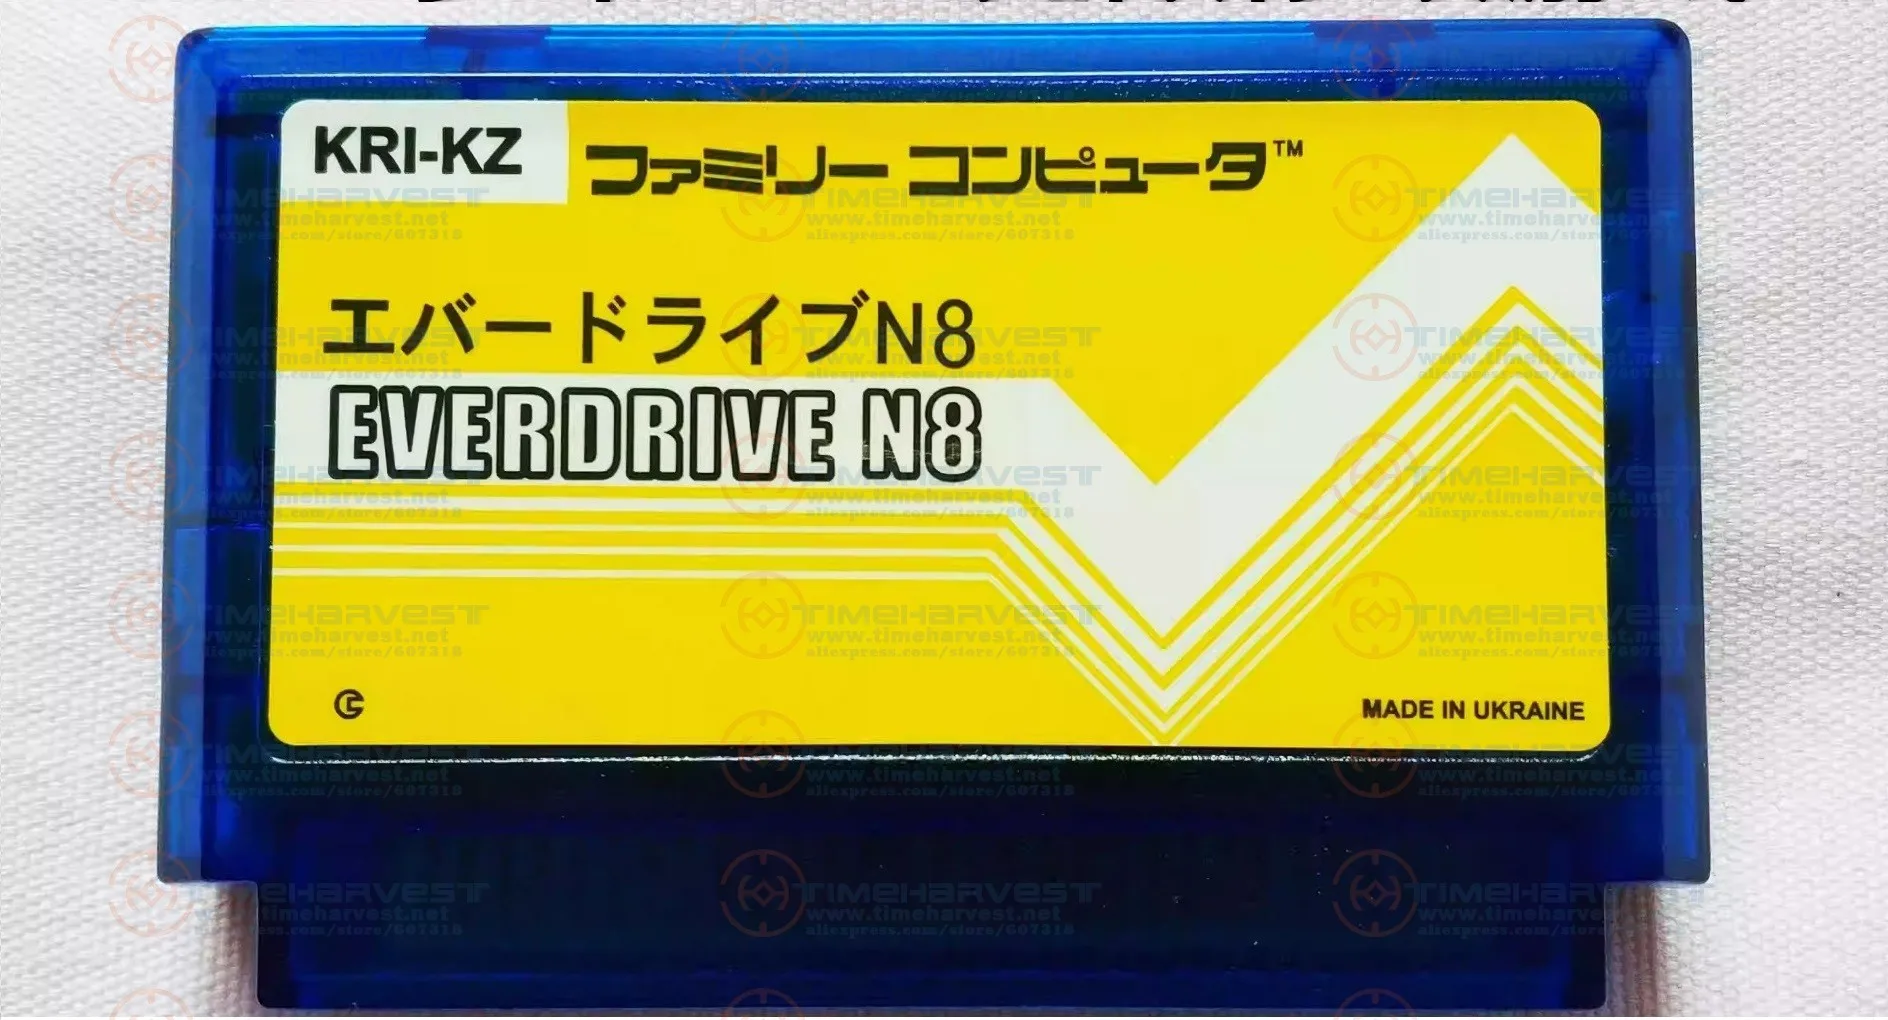 Super 1000 in 1 Multi Games Cartridge Copy Super Everdrive N8 Game Card for Original FC Console &amp; RGB-FC V4C Video Game Console